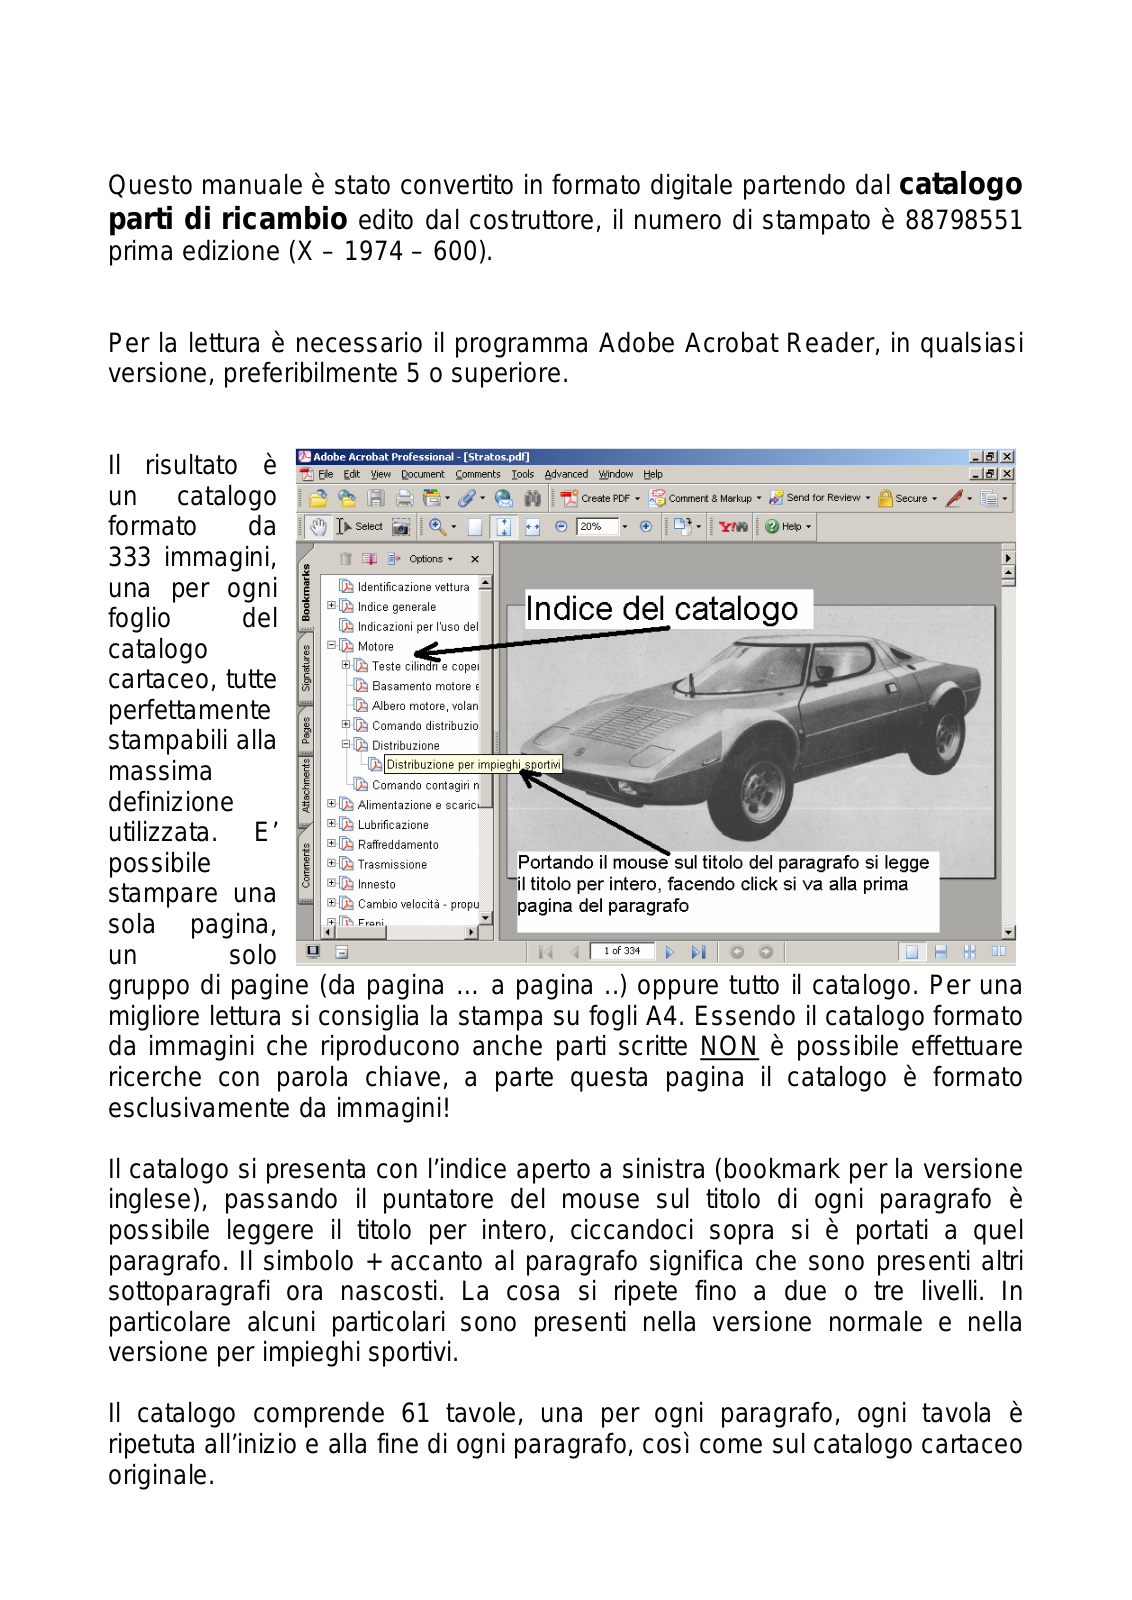 Lancia Stratos 1974 User Manual